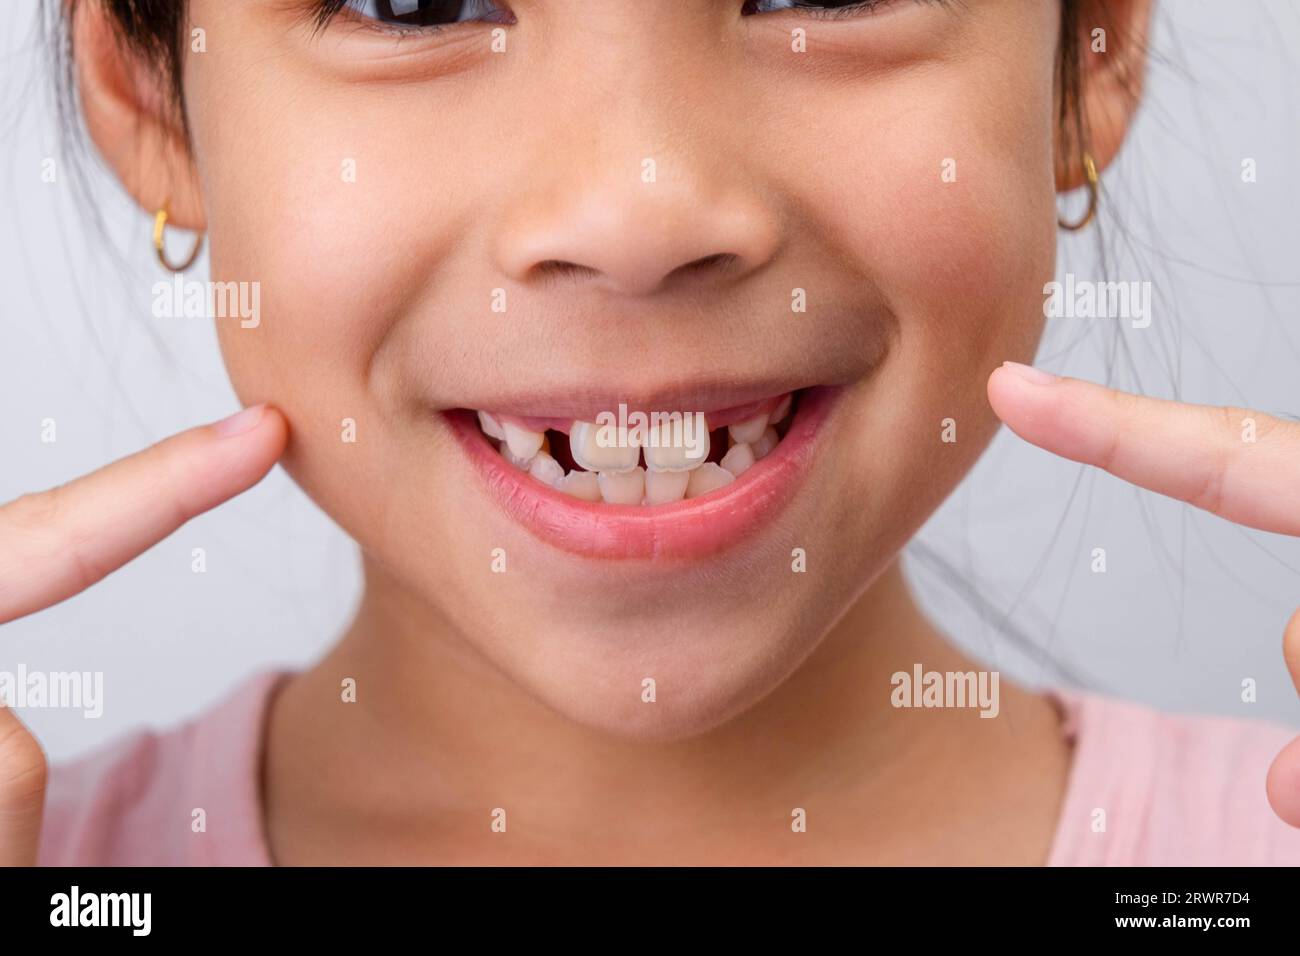 Primo piano di una ragazza simpatica che sorride in grande, mostrando uno spazio vuoto con i primi denti anteriori in crescita. Ragazzina con un grande sorriso e senza denti di latte. Denta Foto Stock